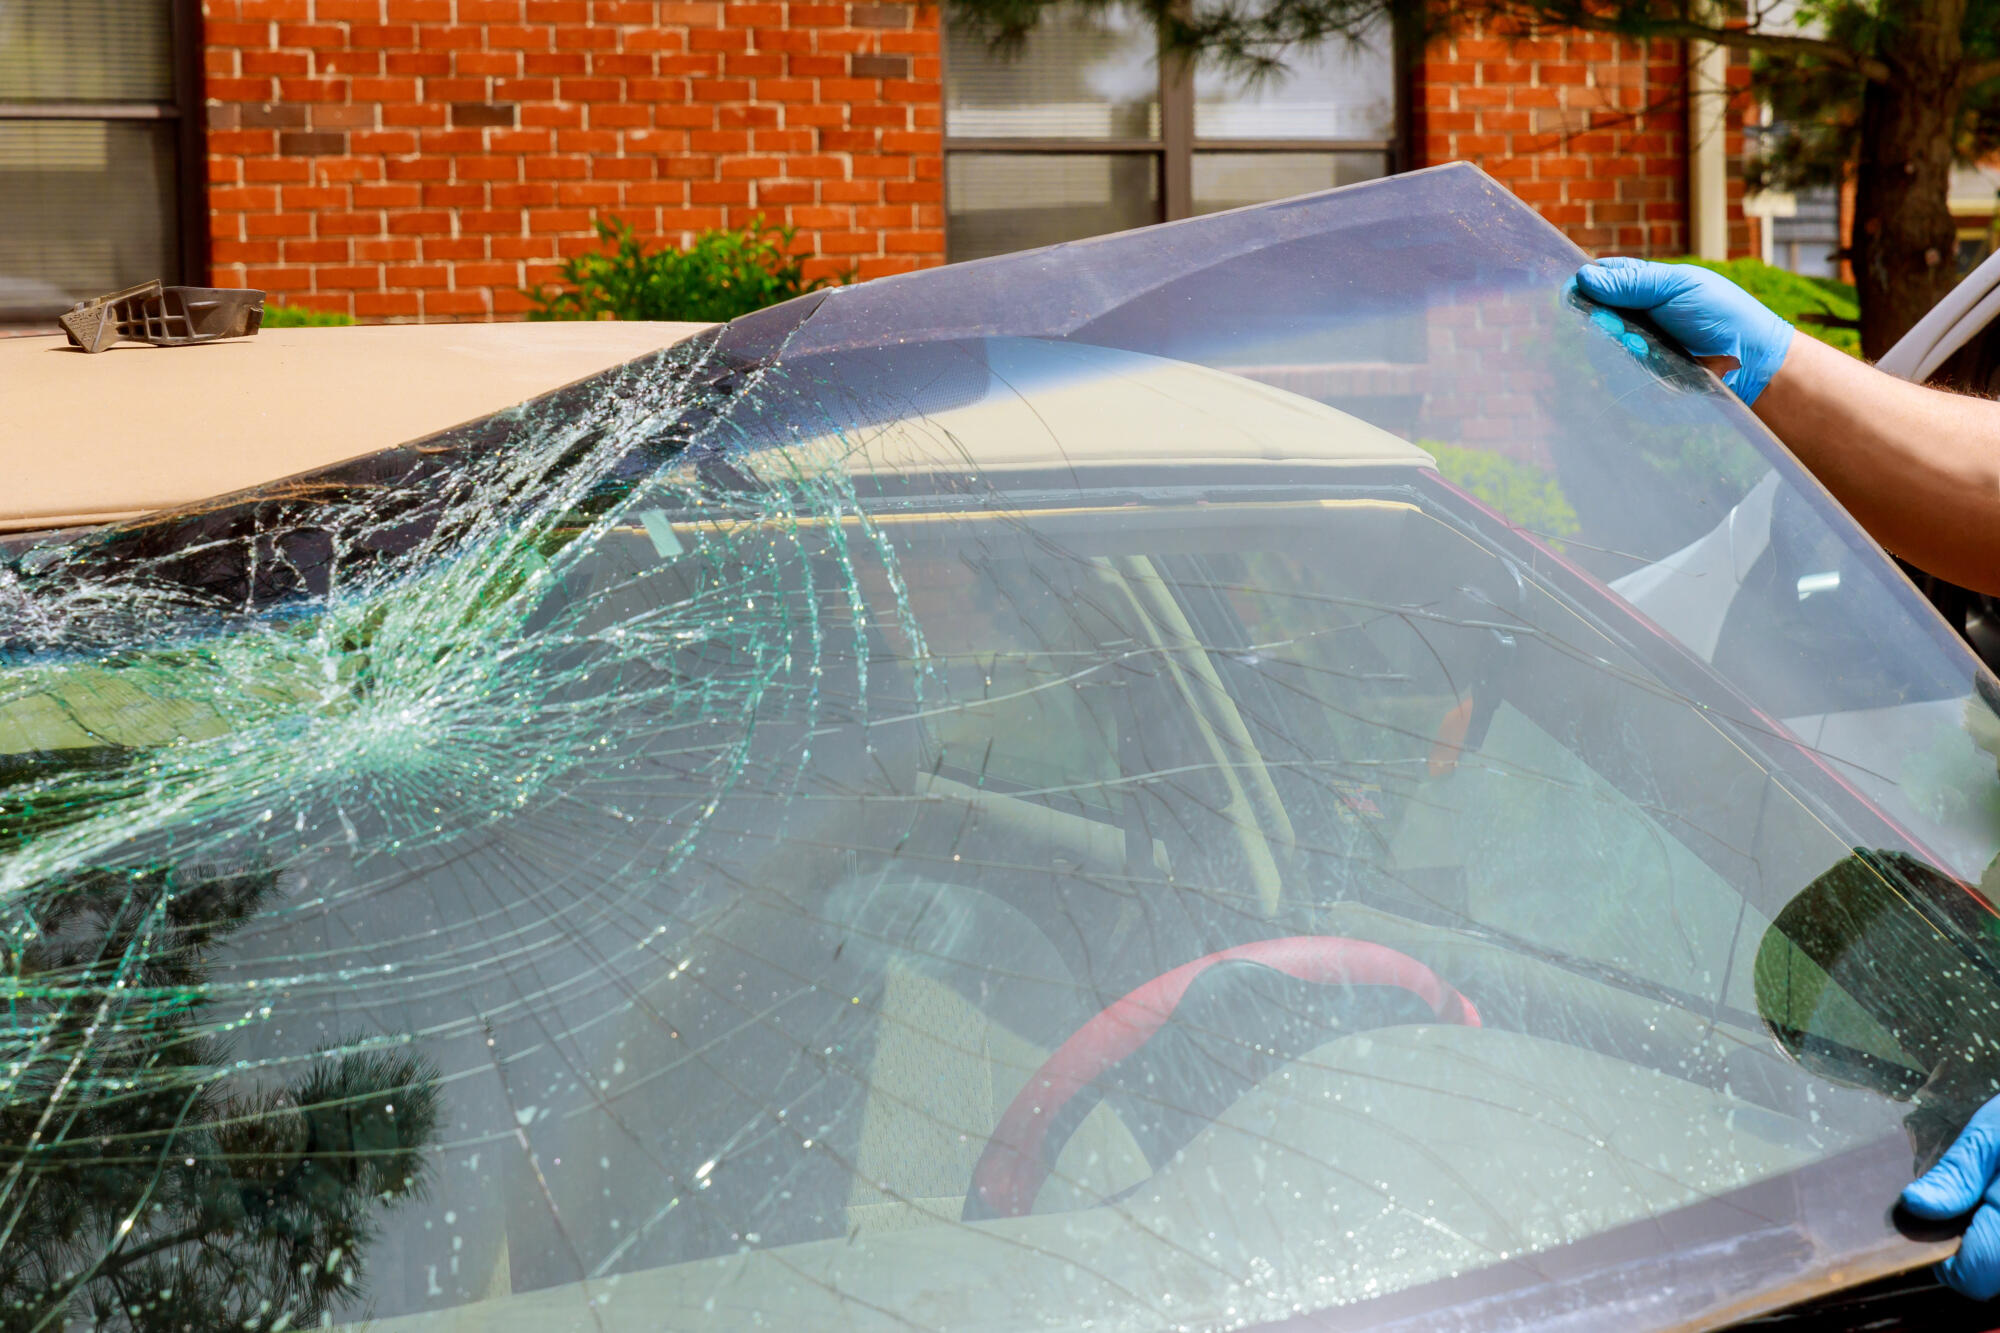 A damaged car windshield.